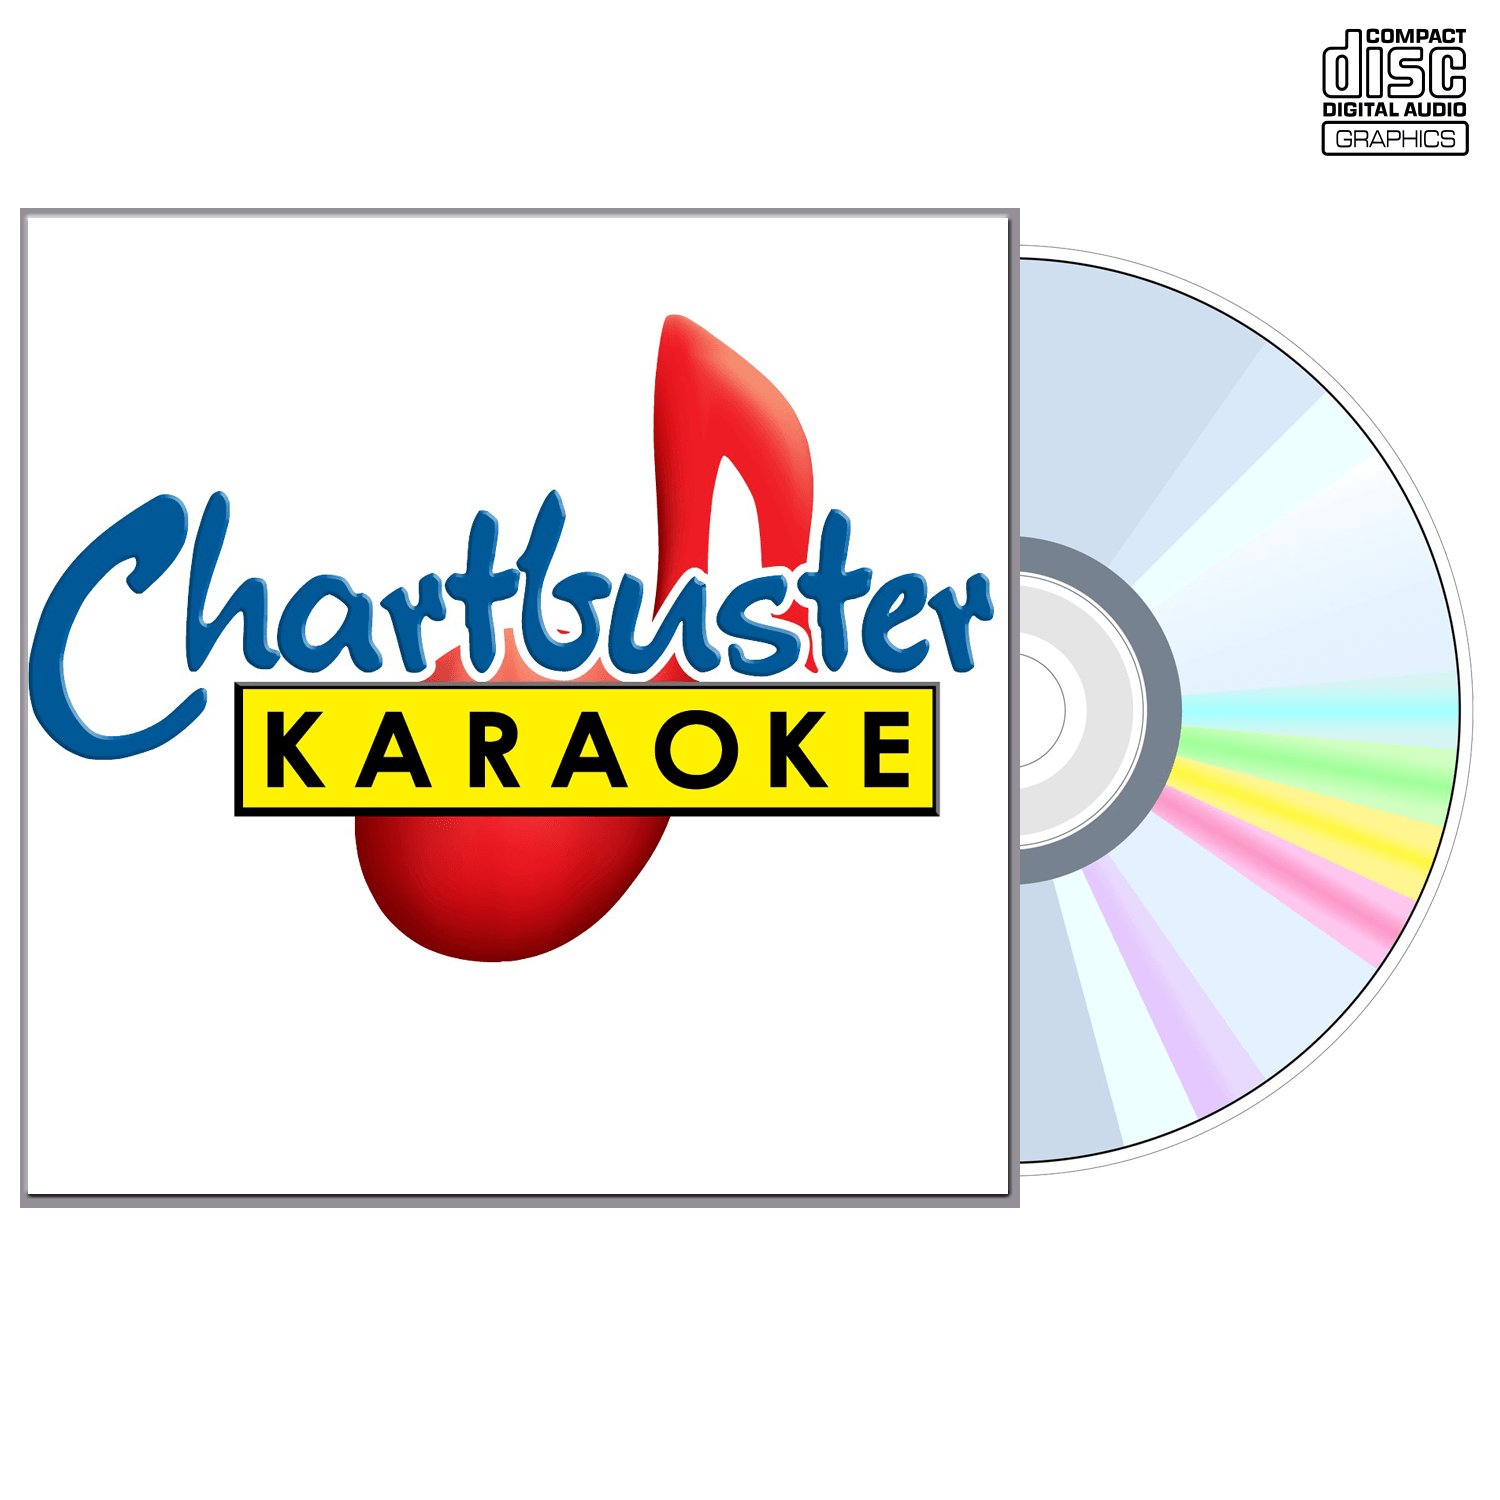 Marc Anthony - CD+G - Chartbuster Karaoke - Karaoke Home Entertainment